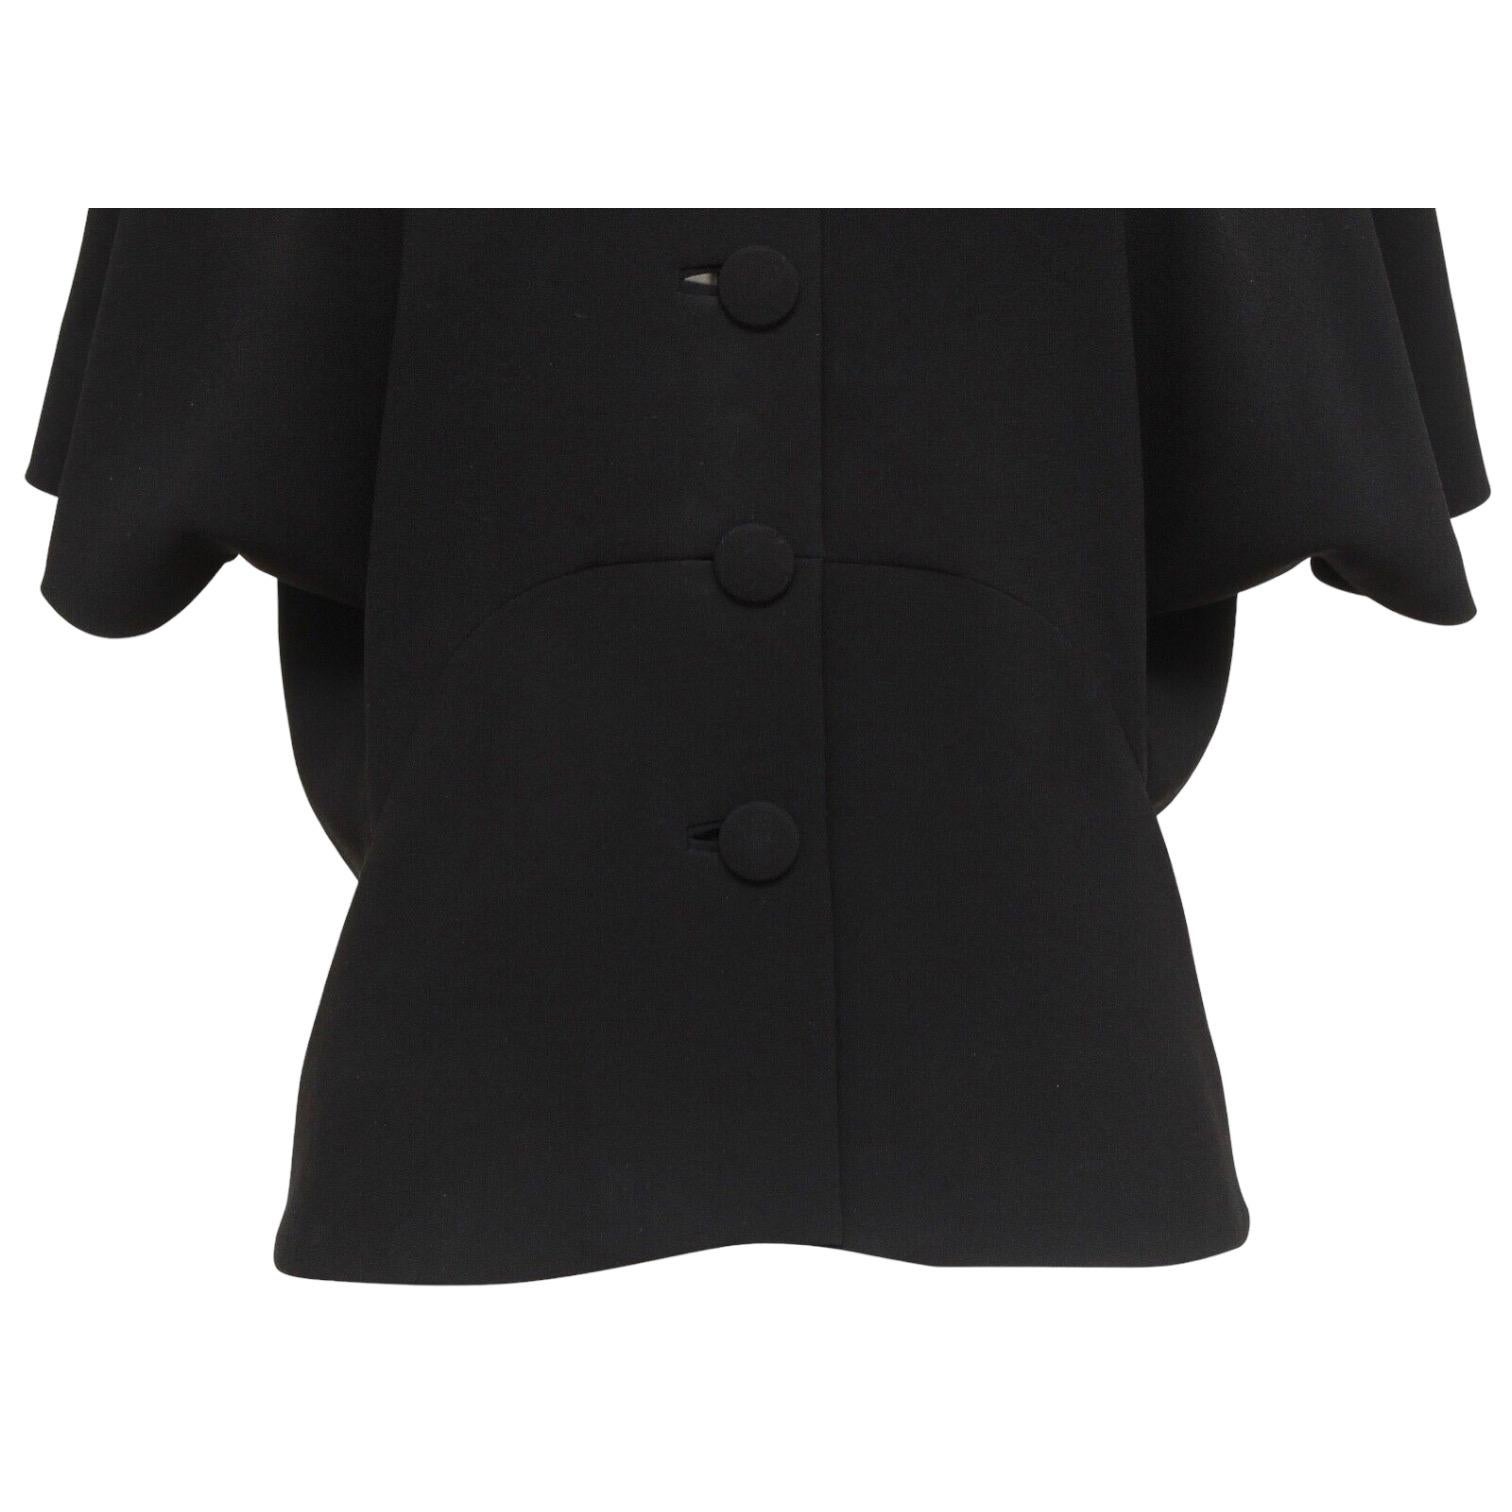 BALENCIAGA.EDITION Blouse Top Shirt BLACK Cape Sleeve Button Down Sz 36 1